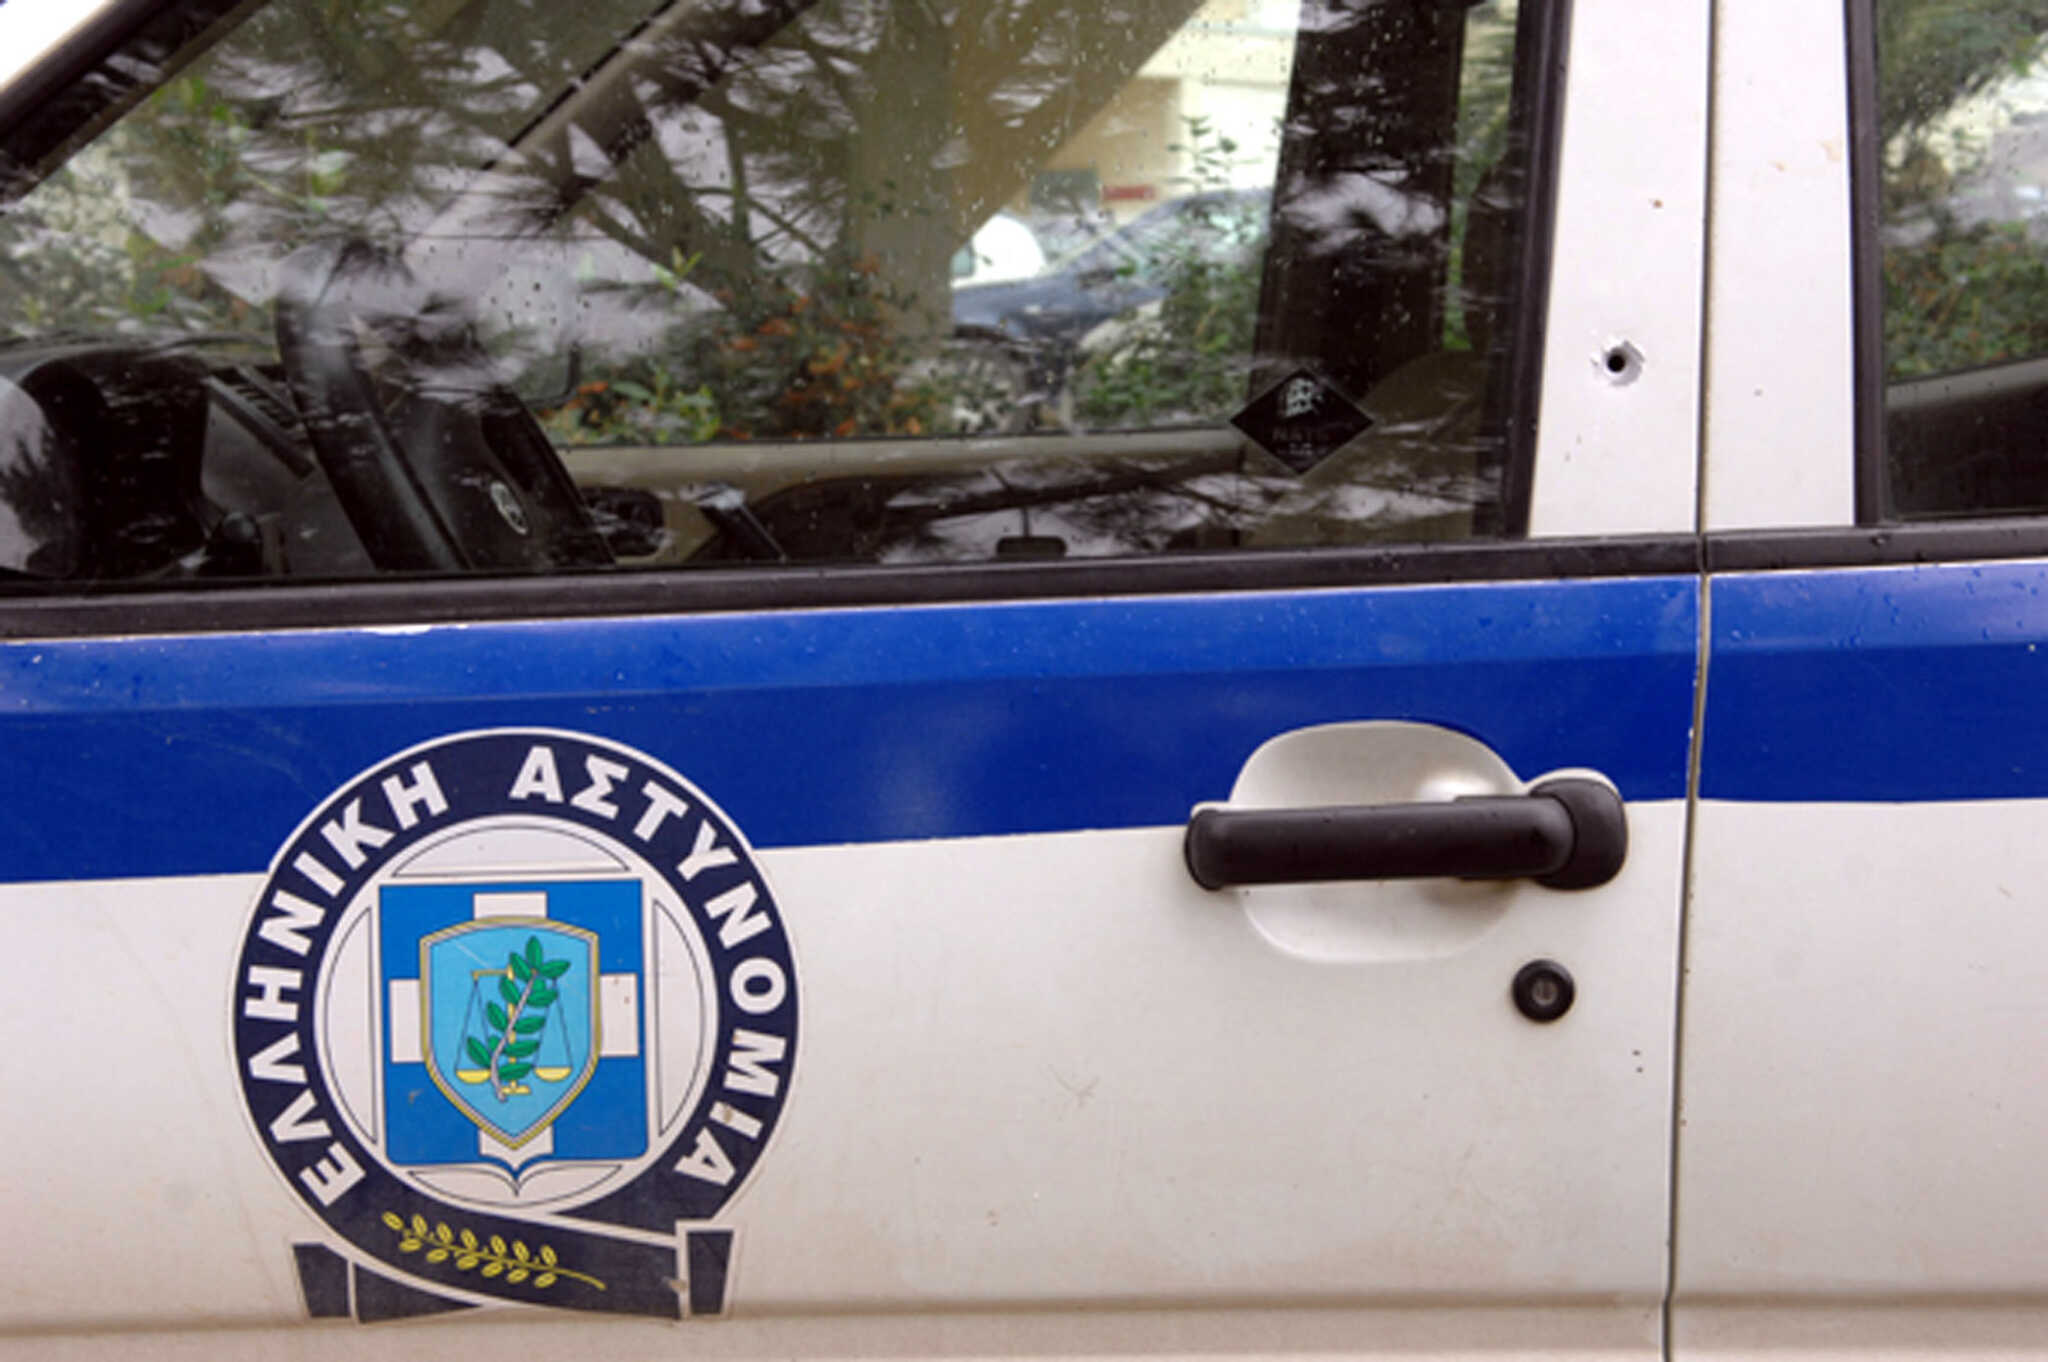 Χανιά: Συνελήφθη άνδρας για ενδοοικογενειακή βία και οπλοκατοχή – Κατασχέθηκαν 4 όπλα